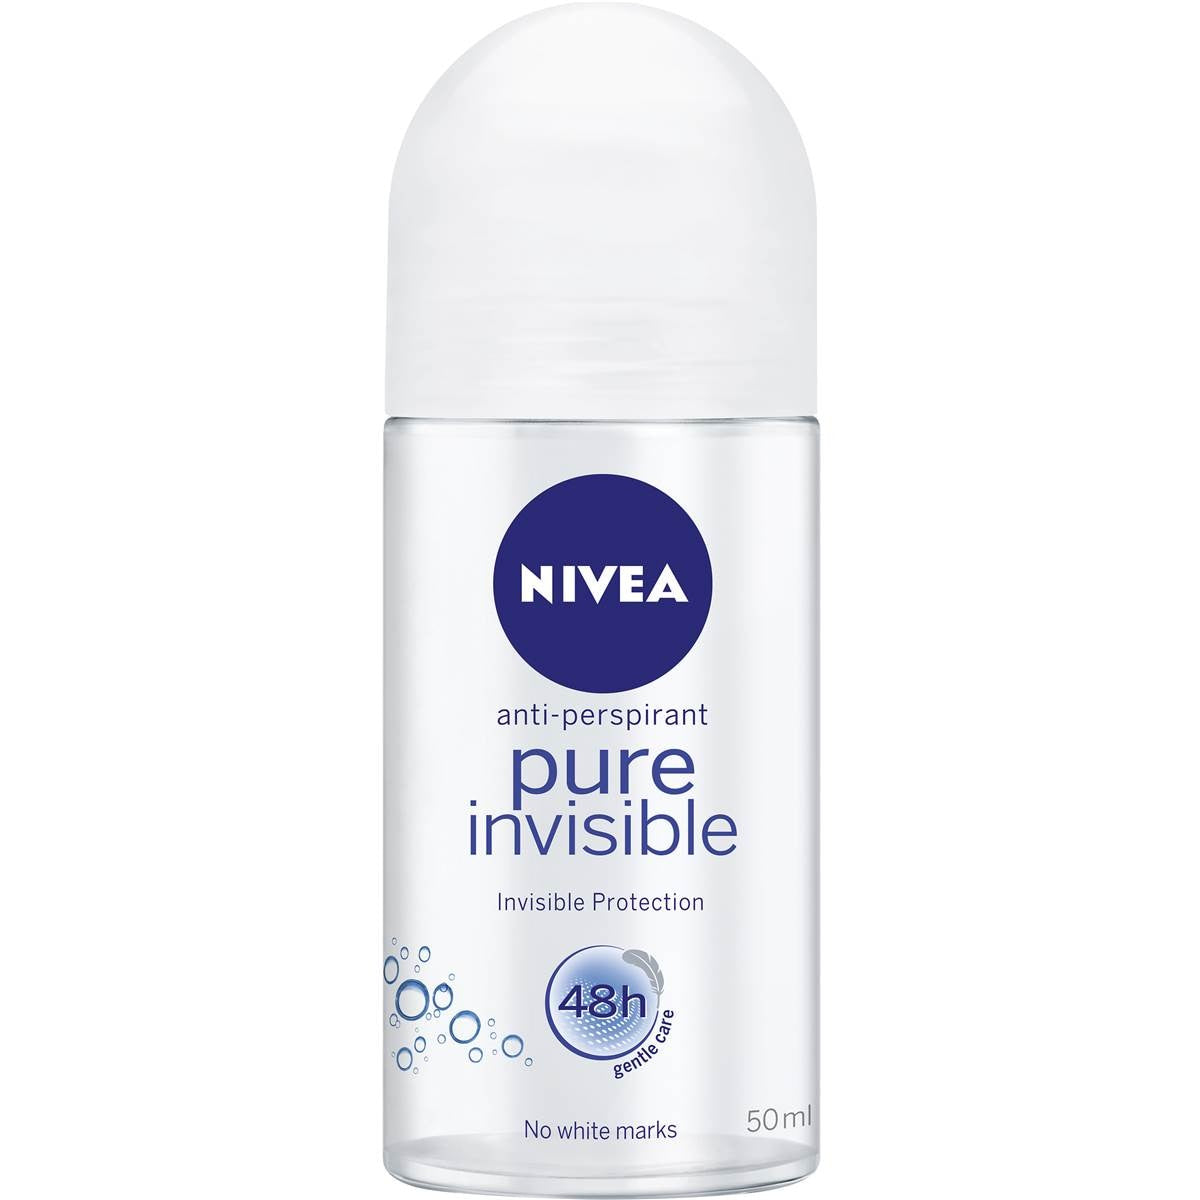 Nivea Anti-Perspirant Pure Invisible Deodorant 50ml